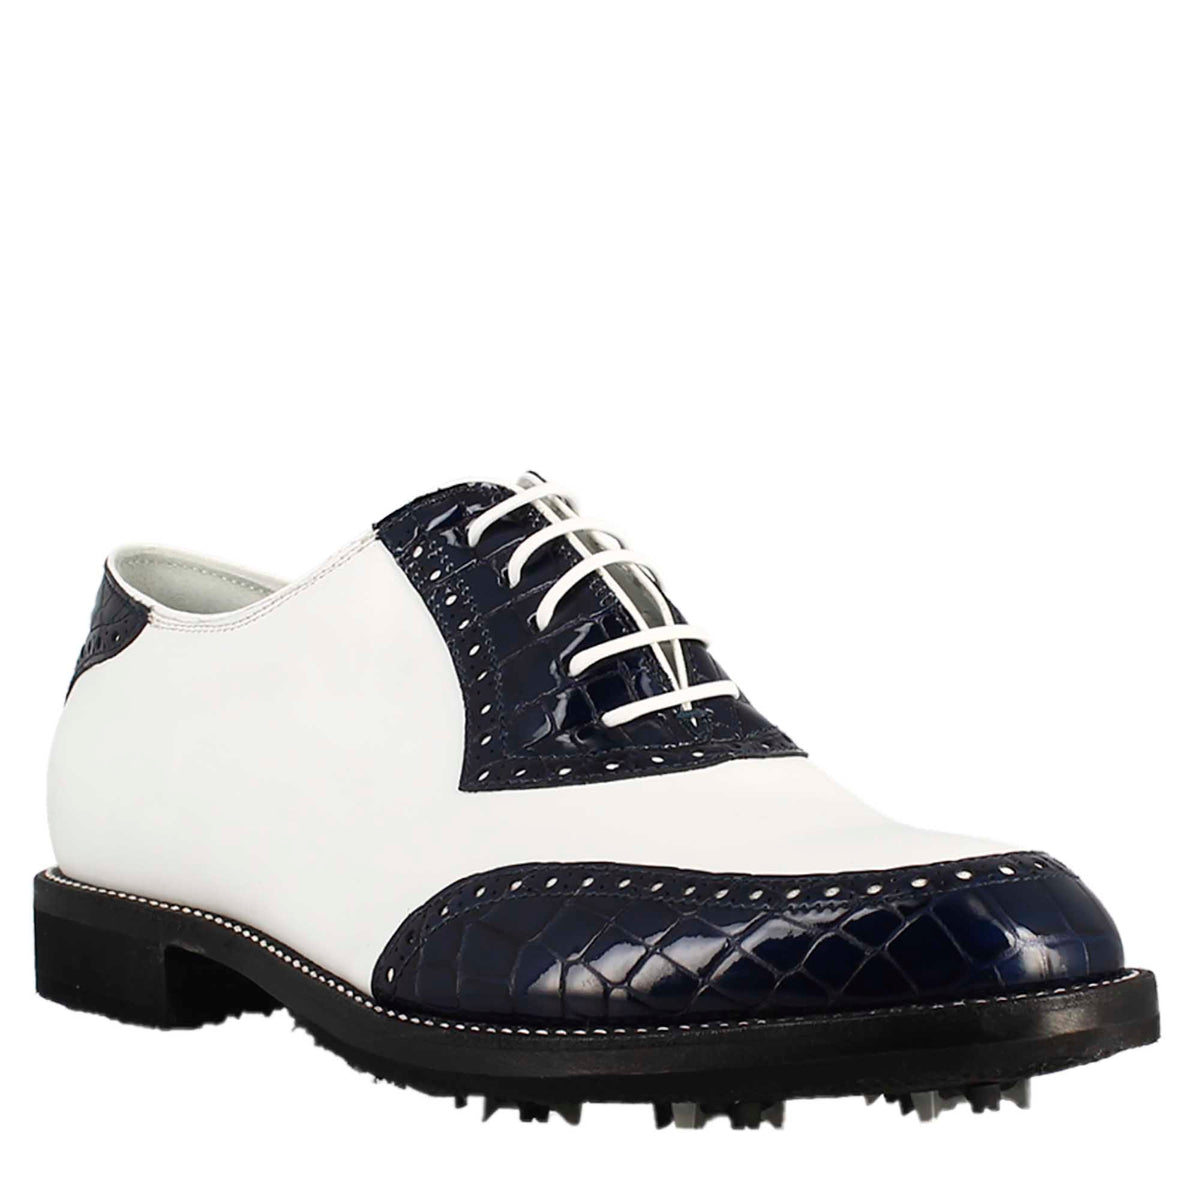 Scarpe golf da uomo artigianali in pelle bianco e cocco blu